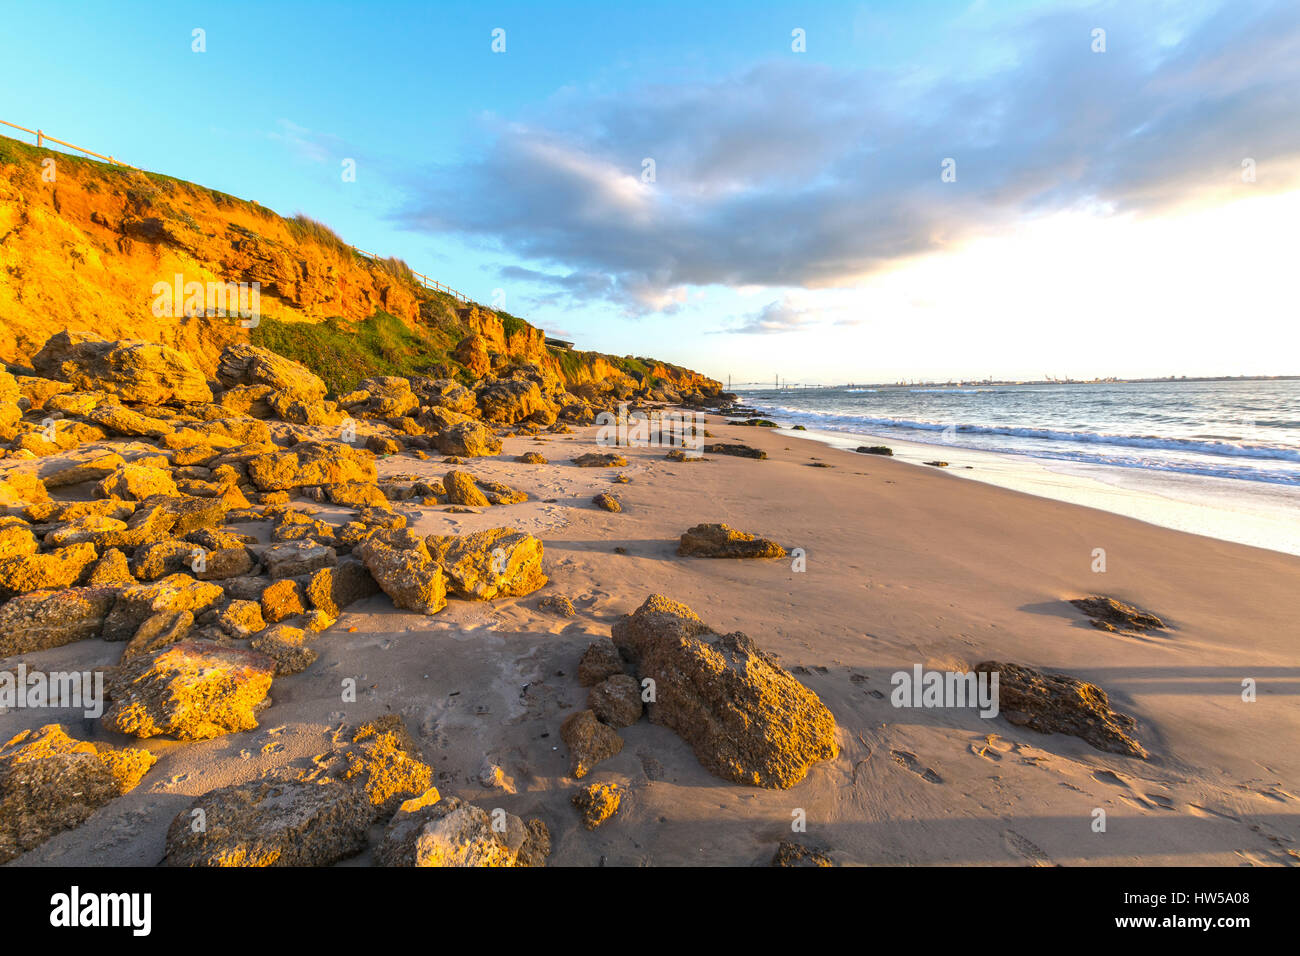 Paisaje de playa rocosa al atardecer, el buzo playa de Vistahermosa, el  Puerto de Santa Maria, Cádiz, España Fotografía de stock - Alamy